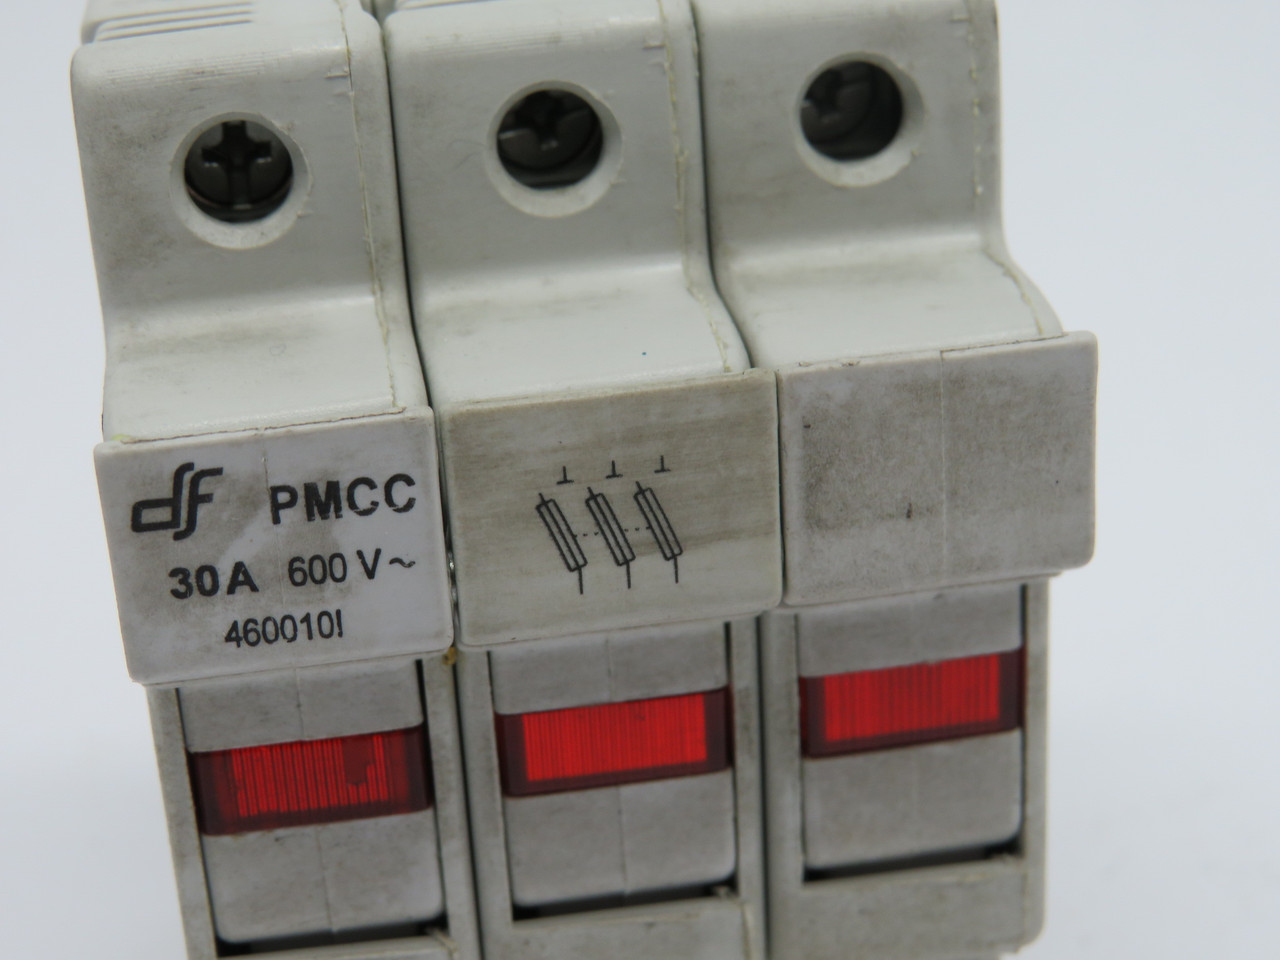 DF PMCC-460010I Fuse Holder 30A 600V 3 Pole USED